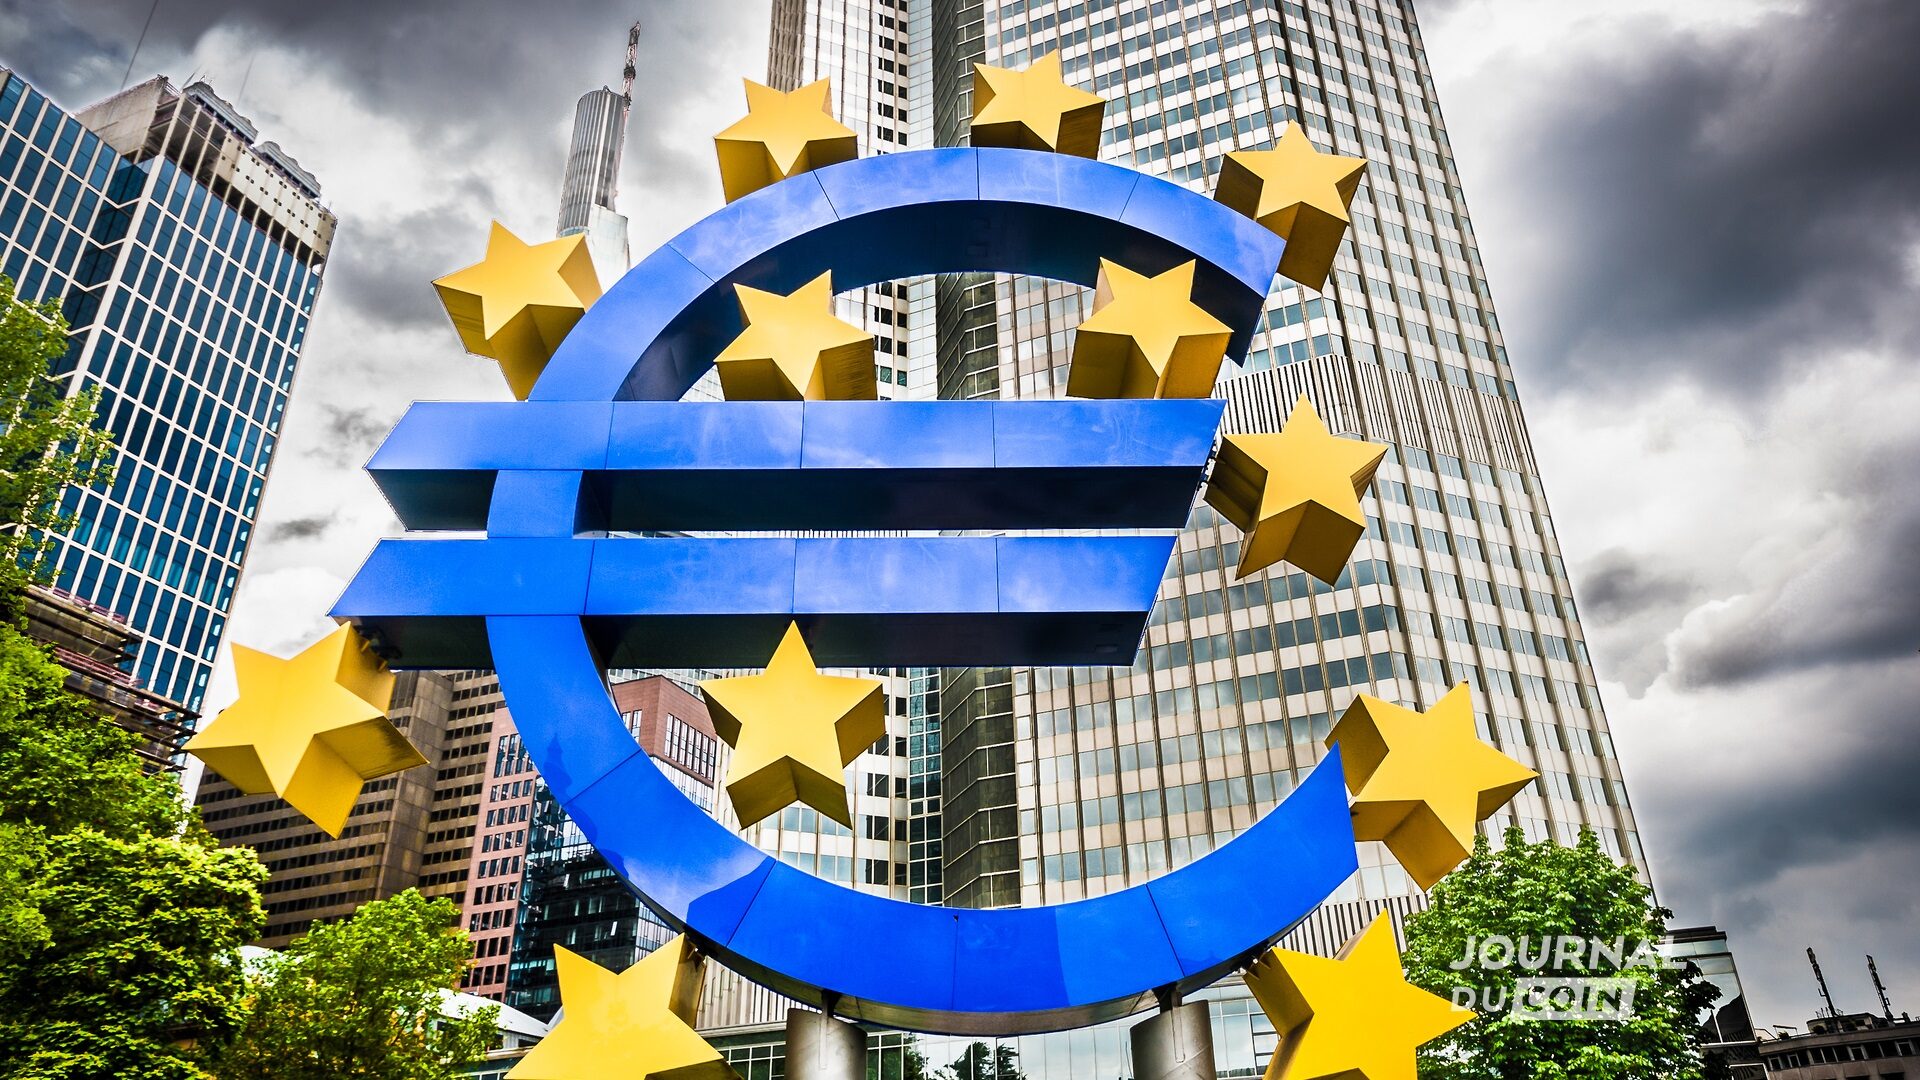 La banque centrale européenne